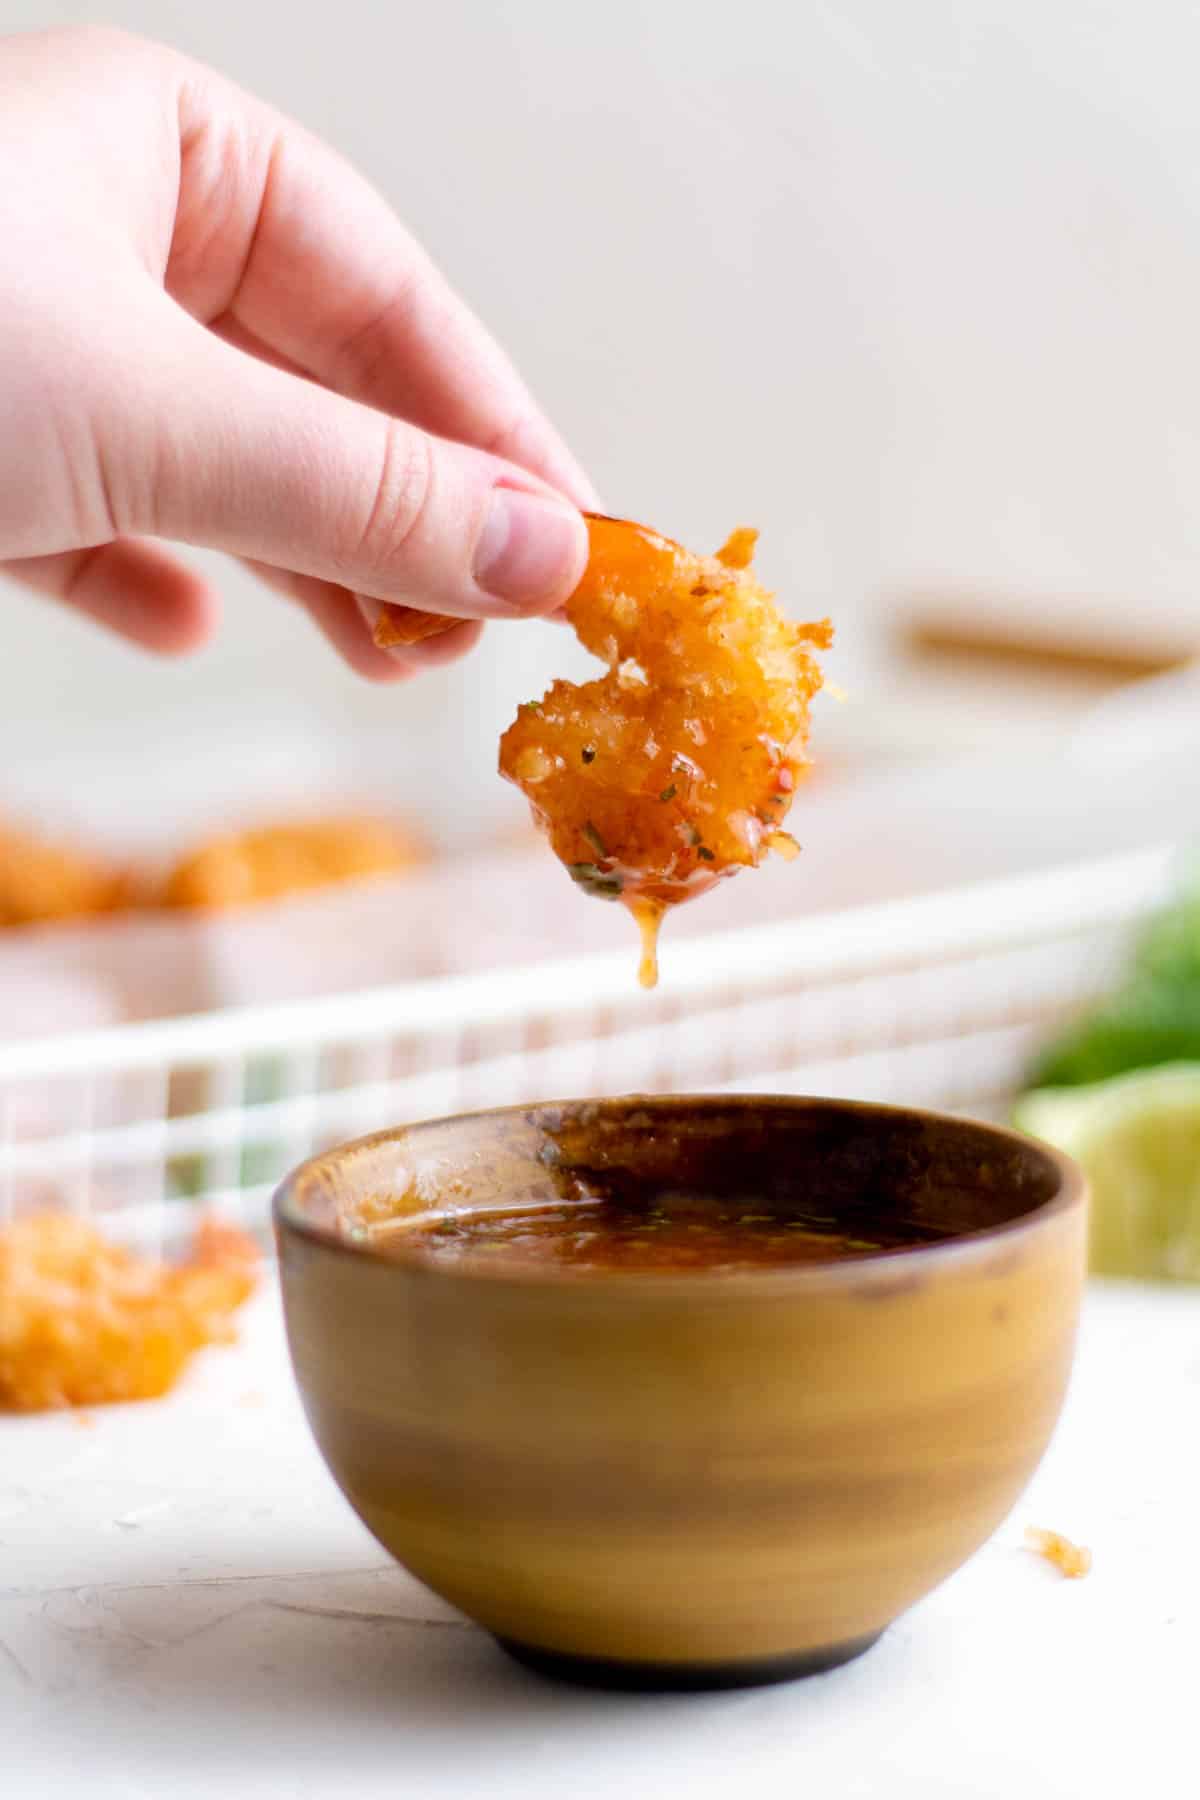 une main plongeant des crevettes croustillantes à la noix de coco dans un petit bol de sauce chili sucrée